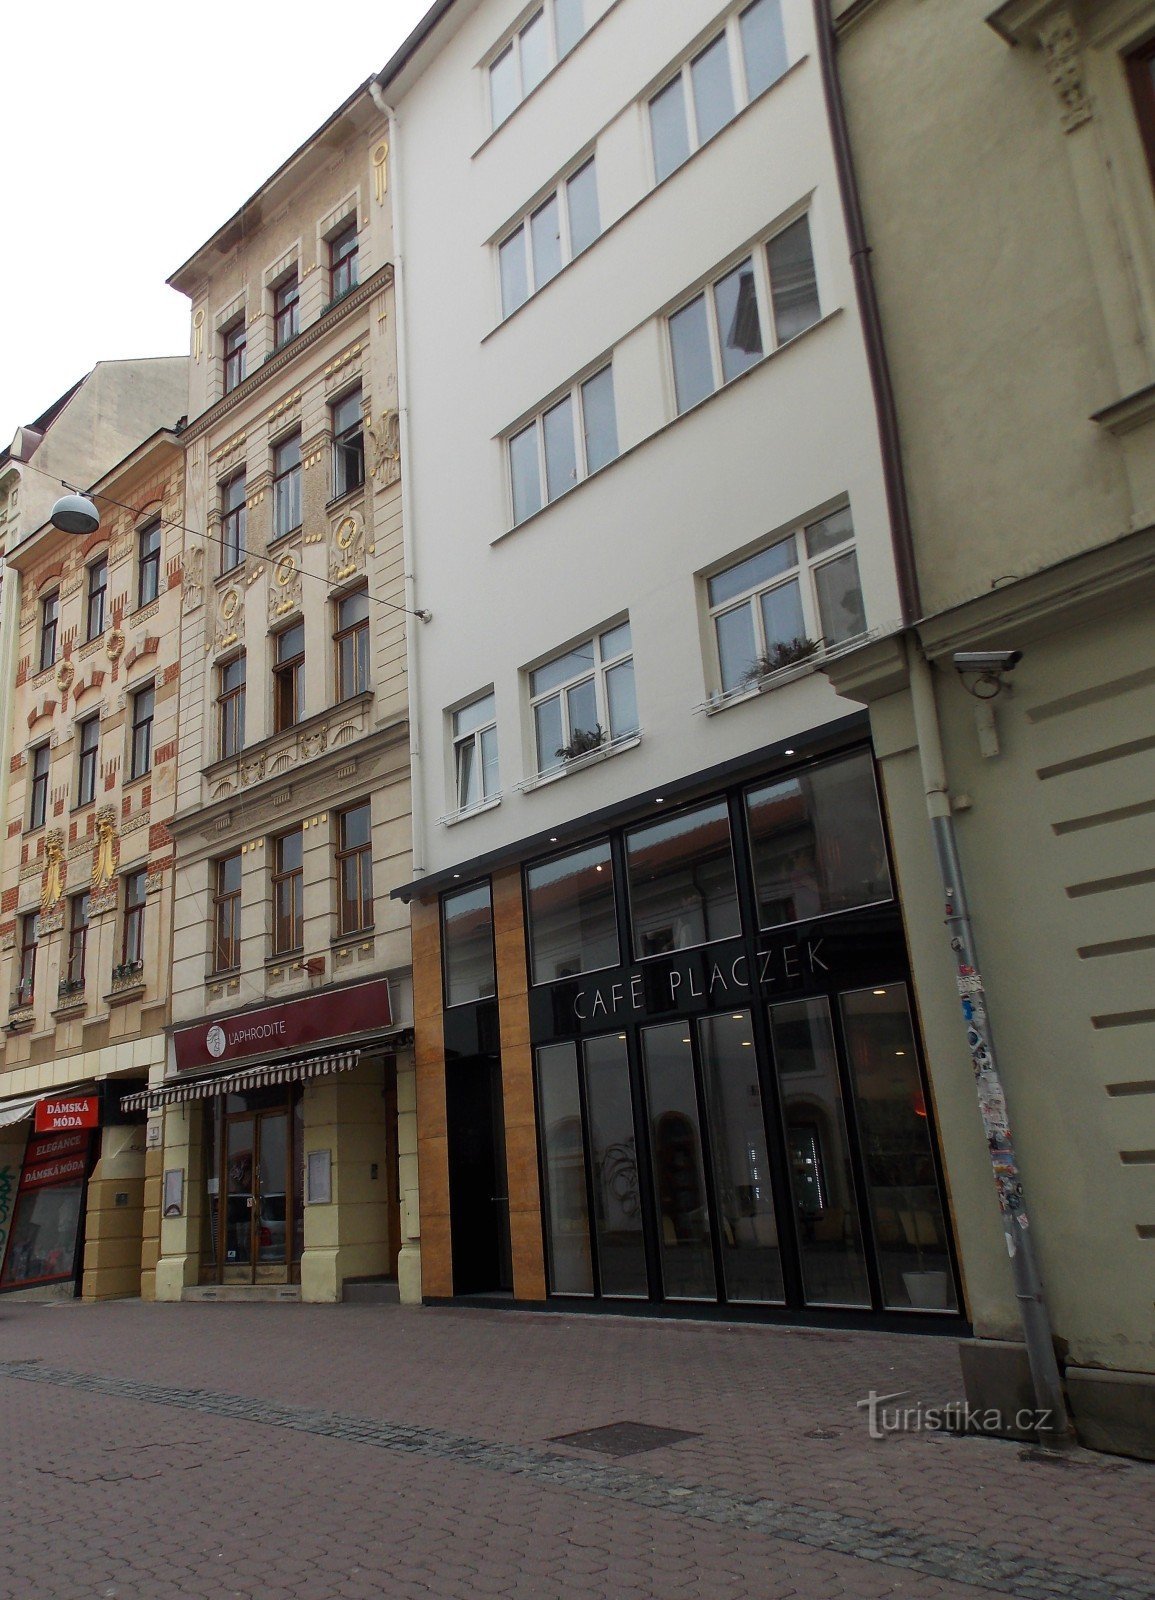 Easter Brno, thành phố lớn thứ hai của Cộng hòa Séc